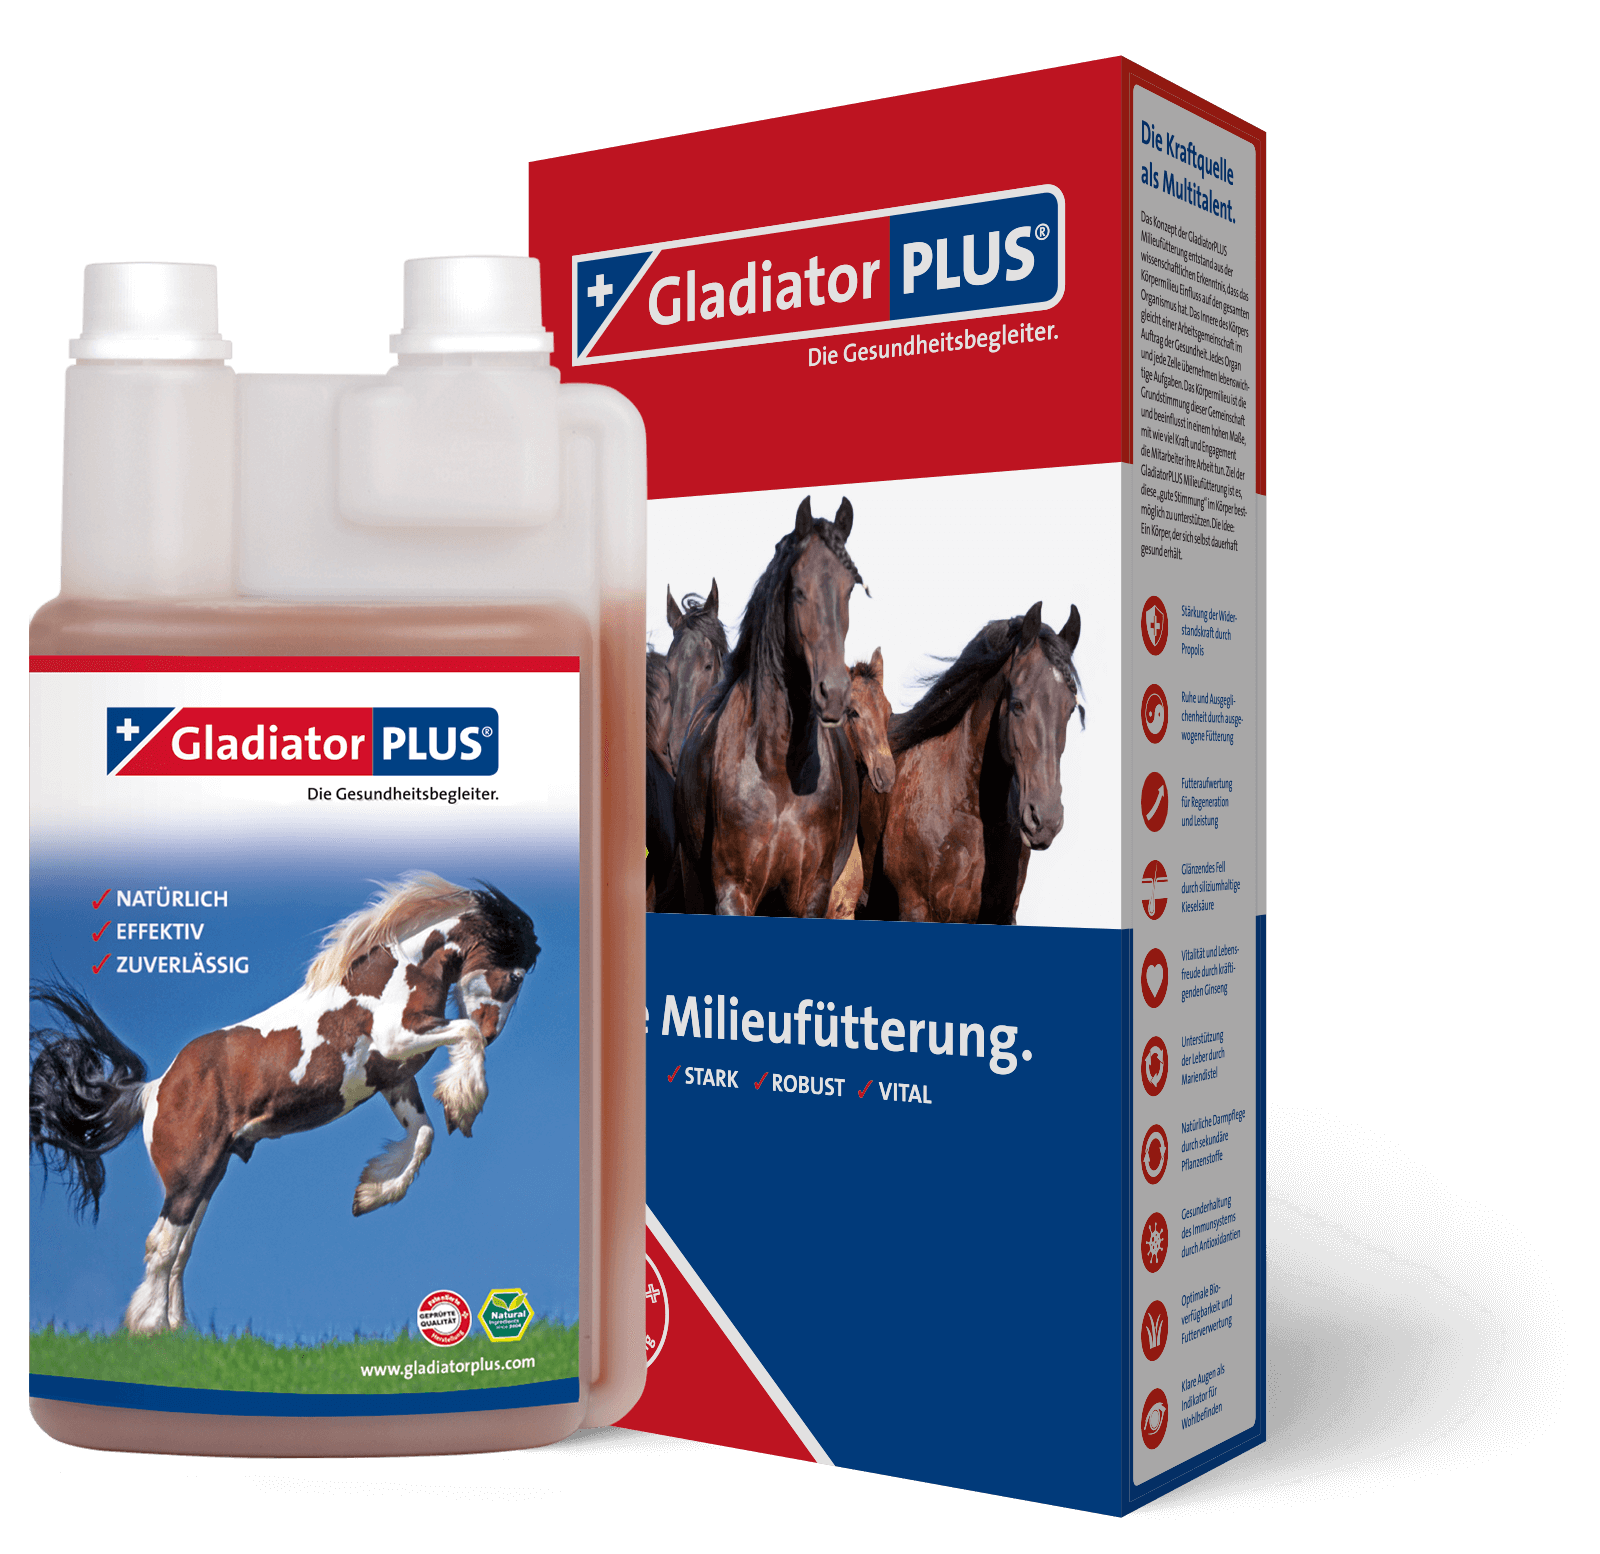 gladiatorplus-gladiator-plus-horse-equusvitalis-onlineshop